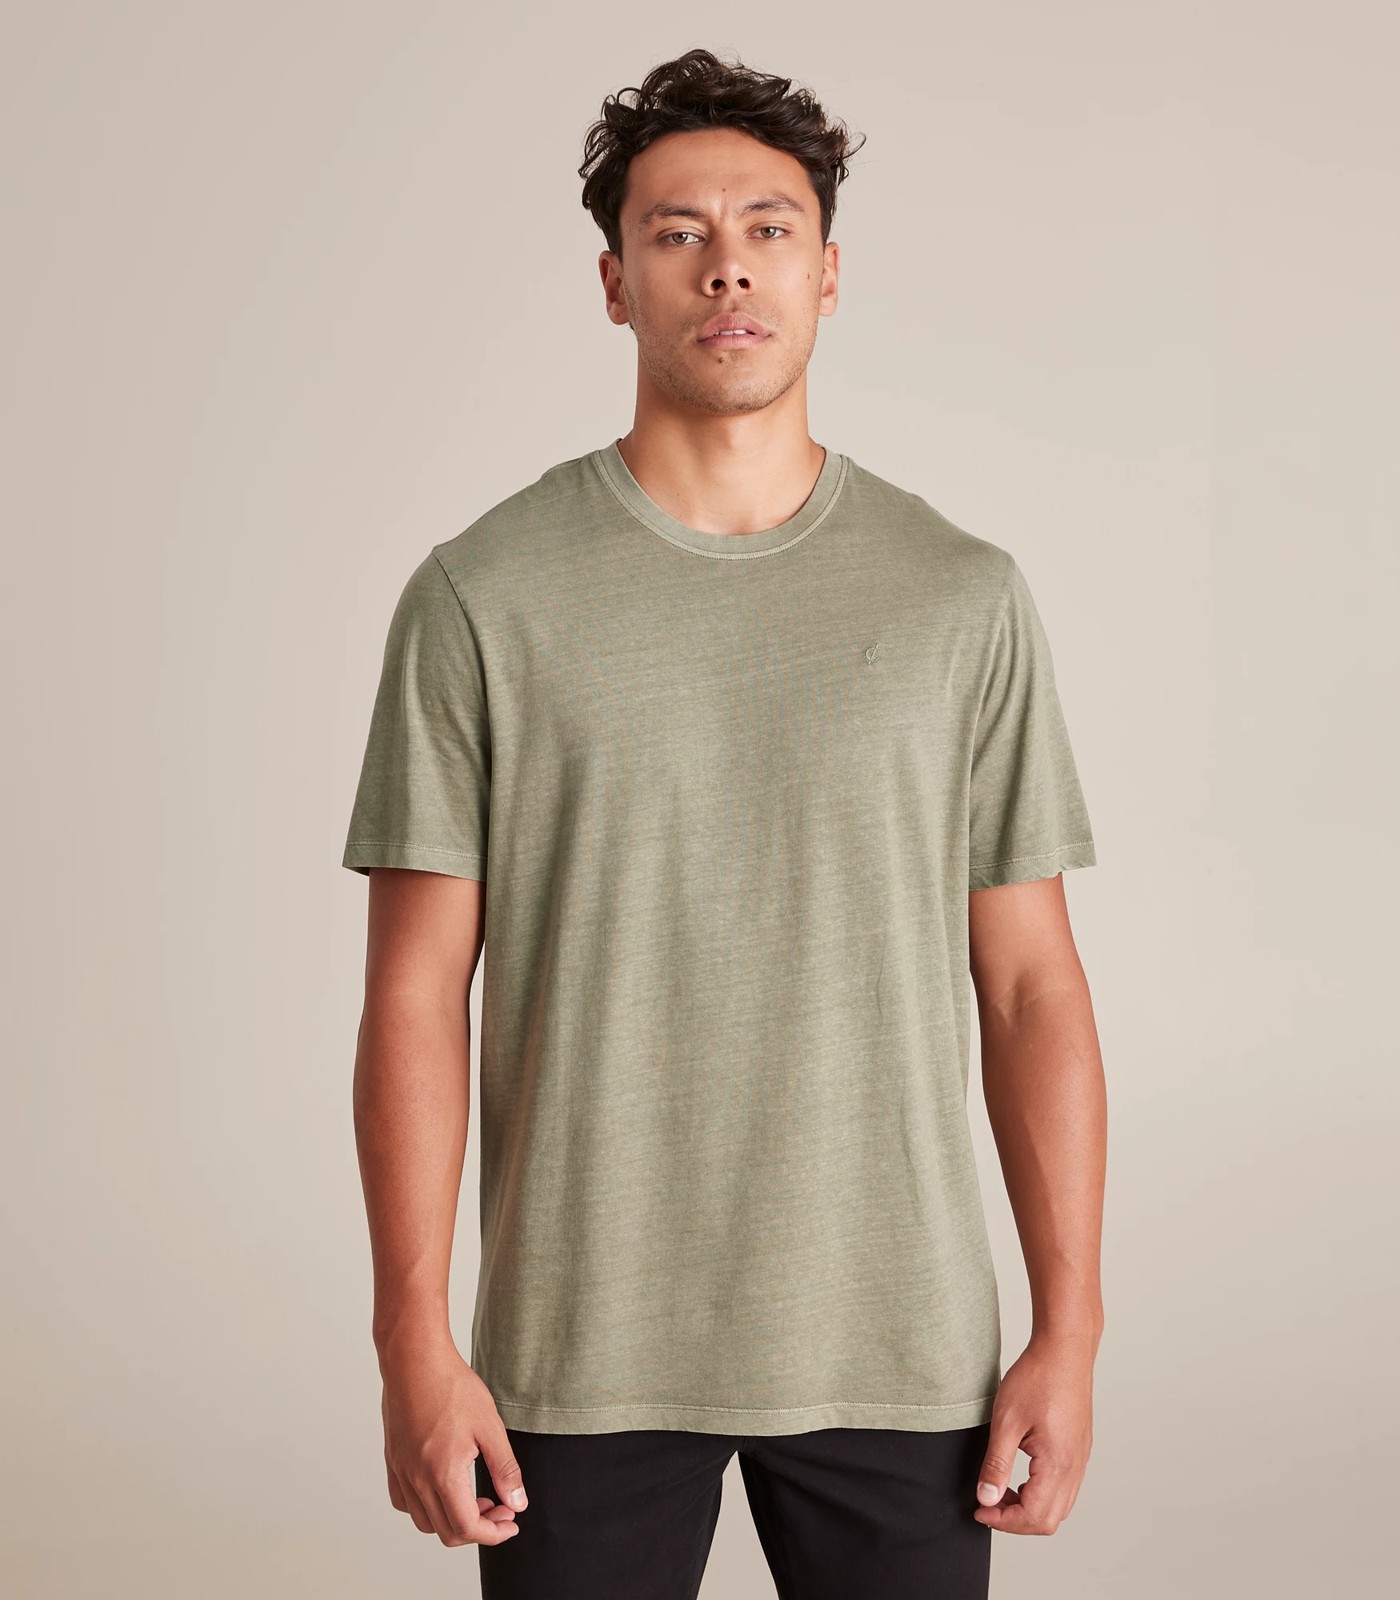 Commons T-Shirt - Veviter | Target Australia